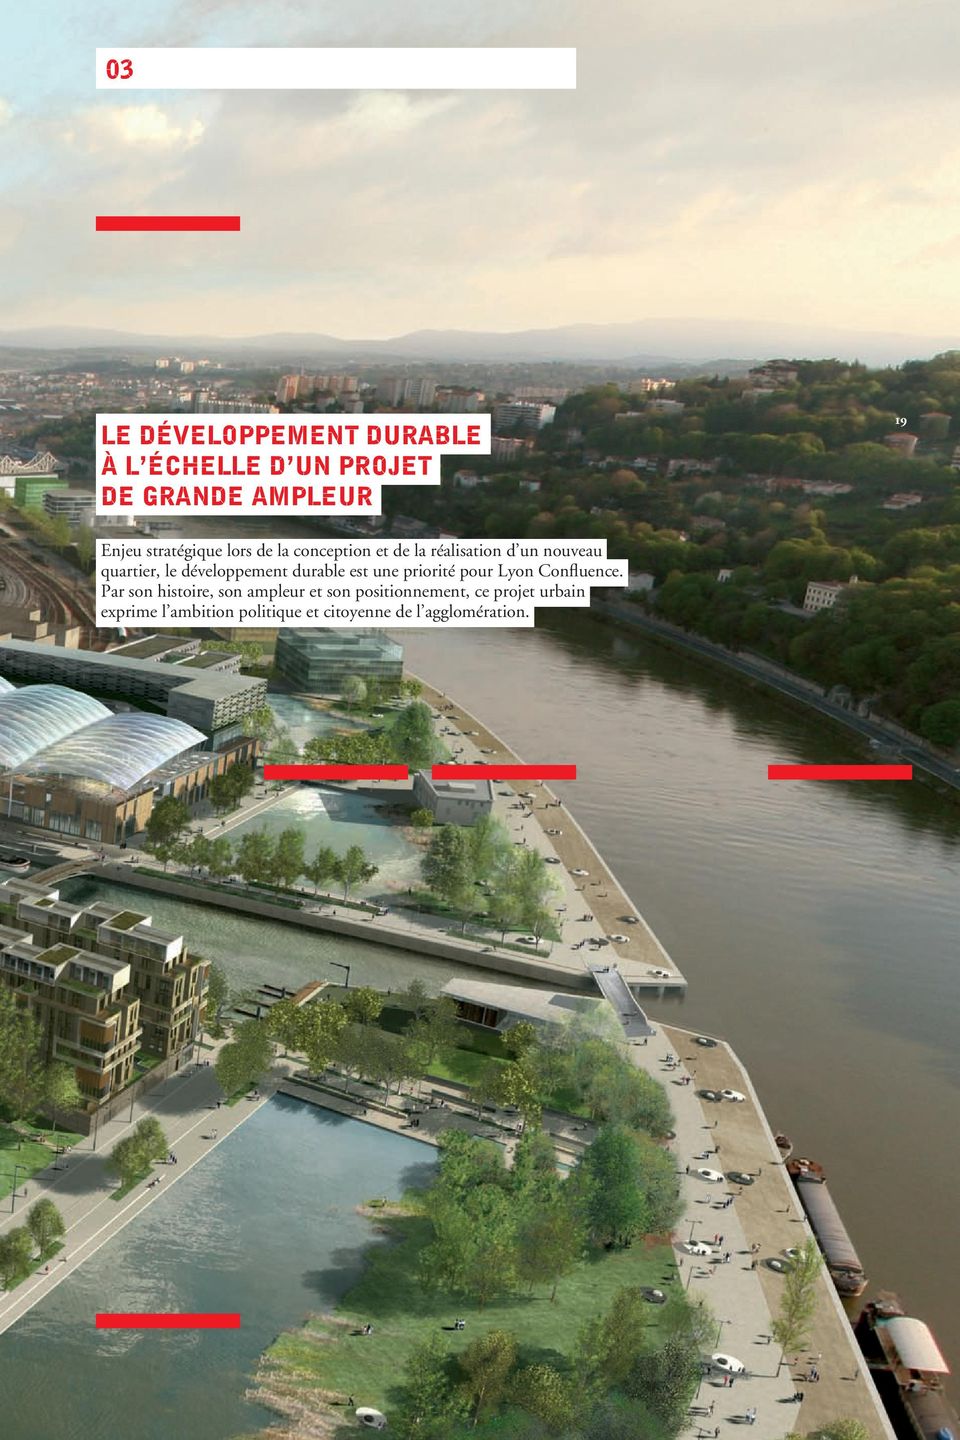 quartier, le développement durable est une priorité pour Lyon Confluence.